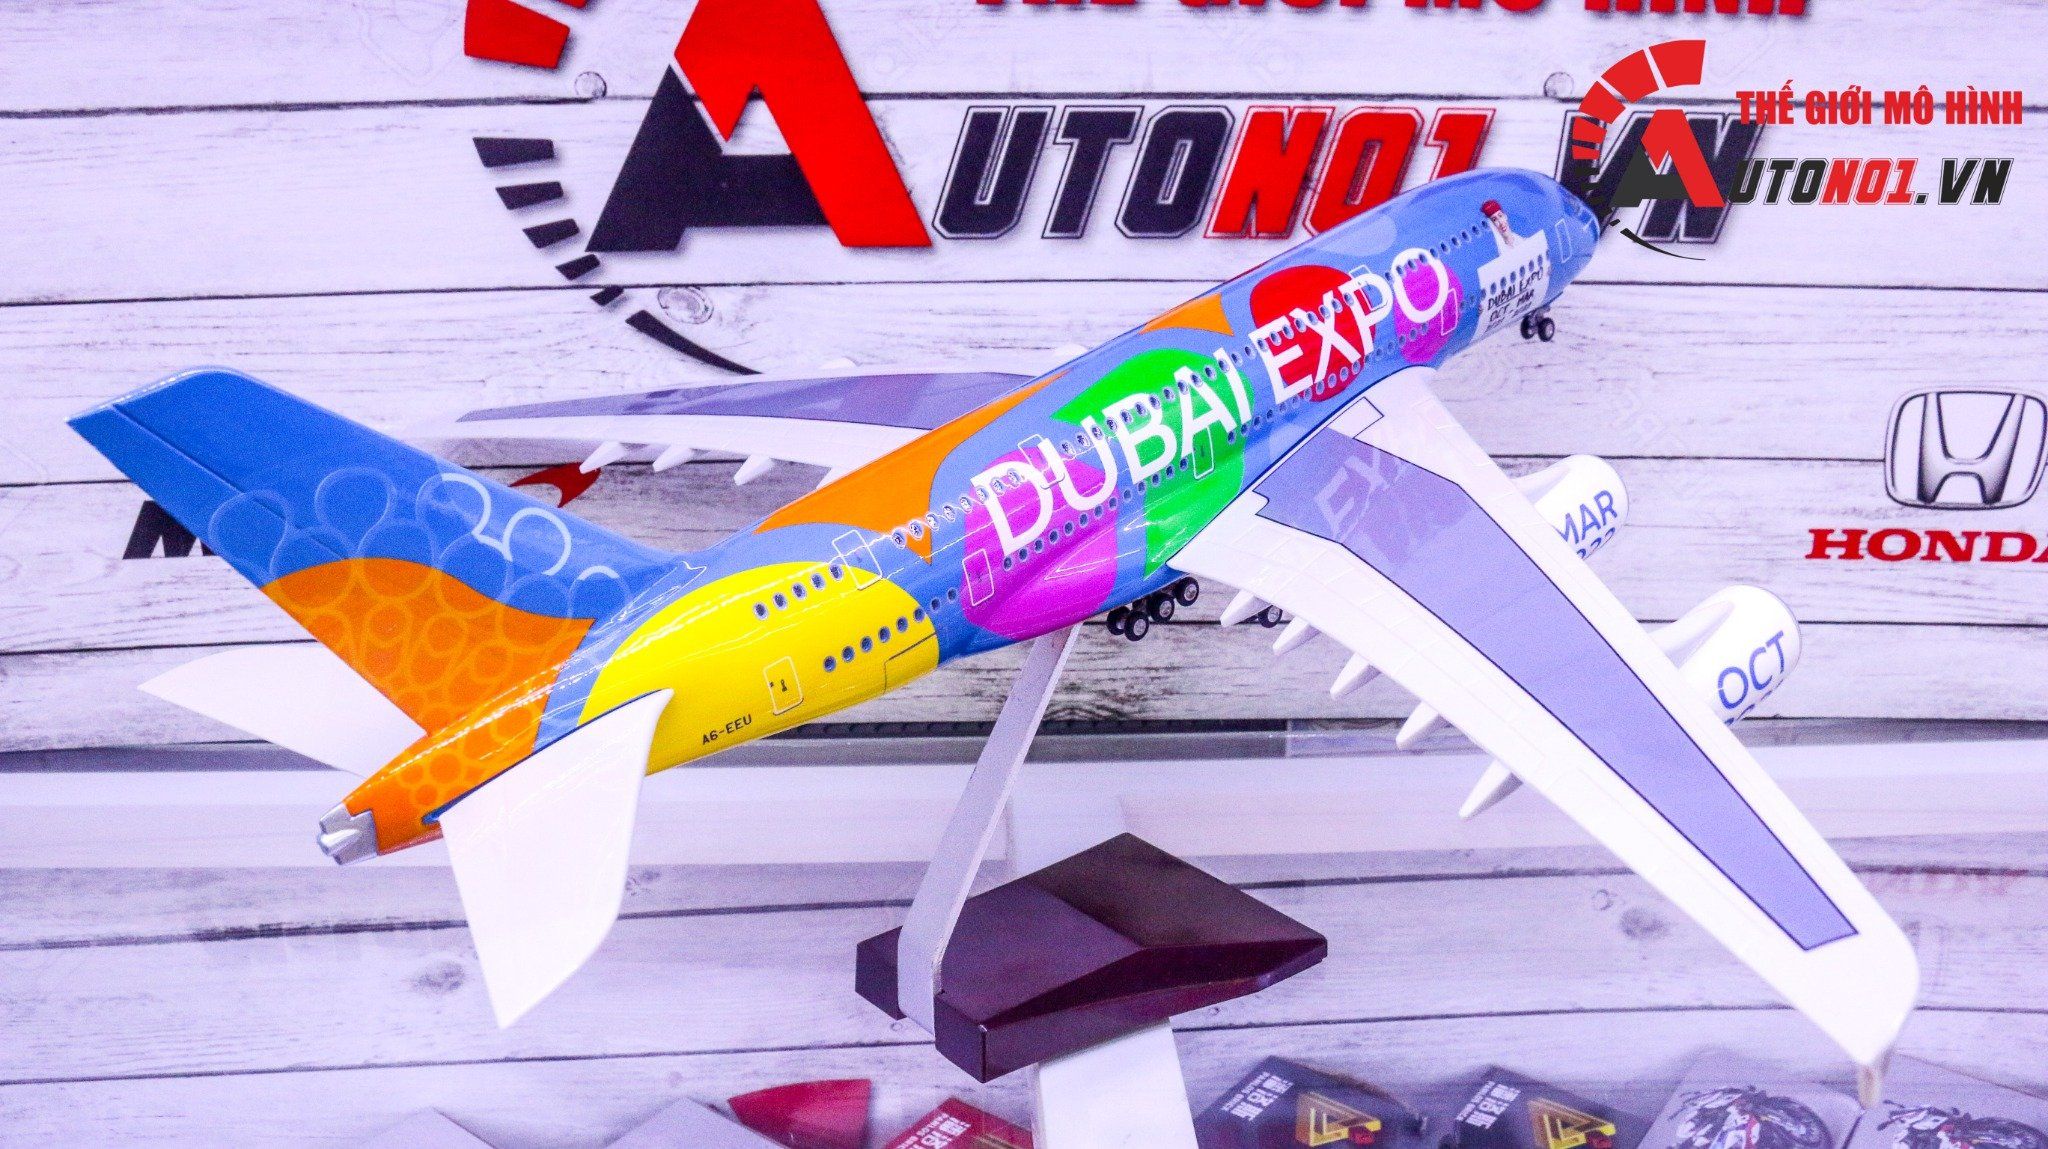  Mô hình máy bay Be part of the magic Dubai expo 2021-2022 Airbus A380 47cm 1:200 có đèn led tự động theo tiếng vỗ tay hoặc chạm MB47016 